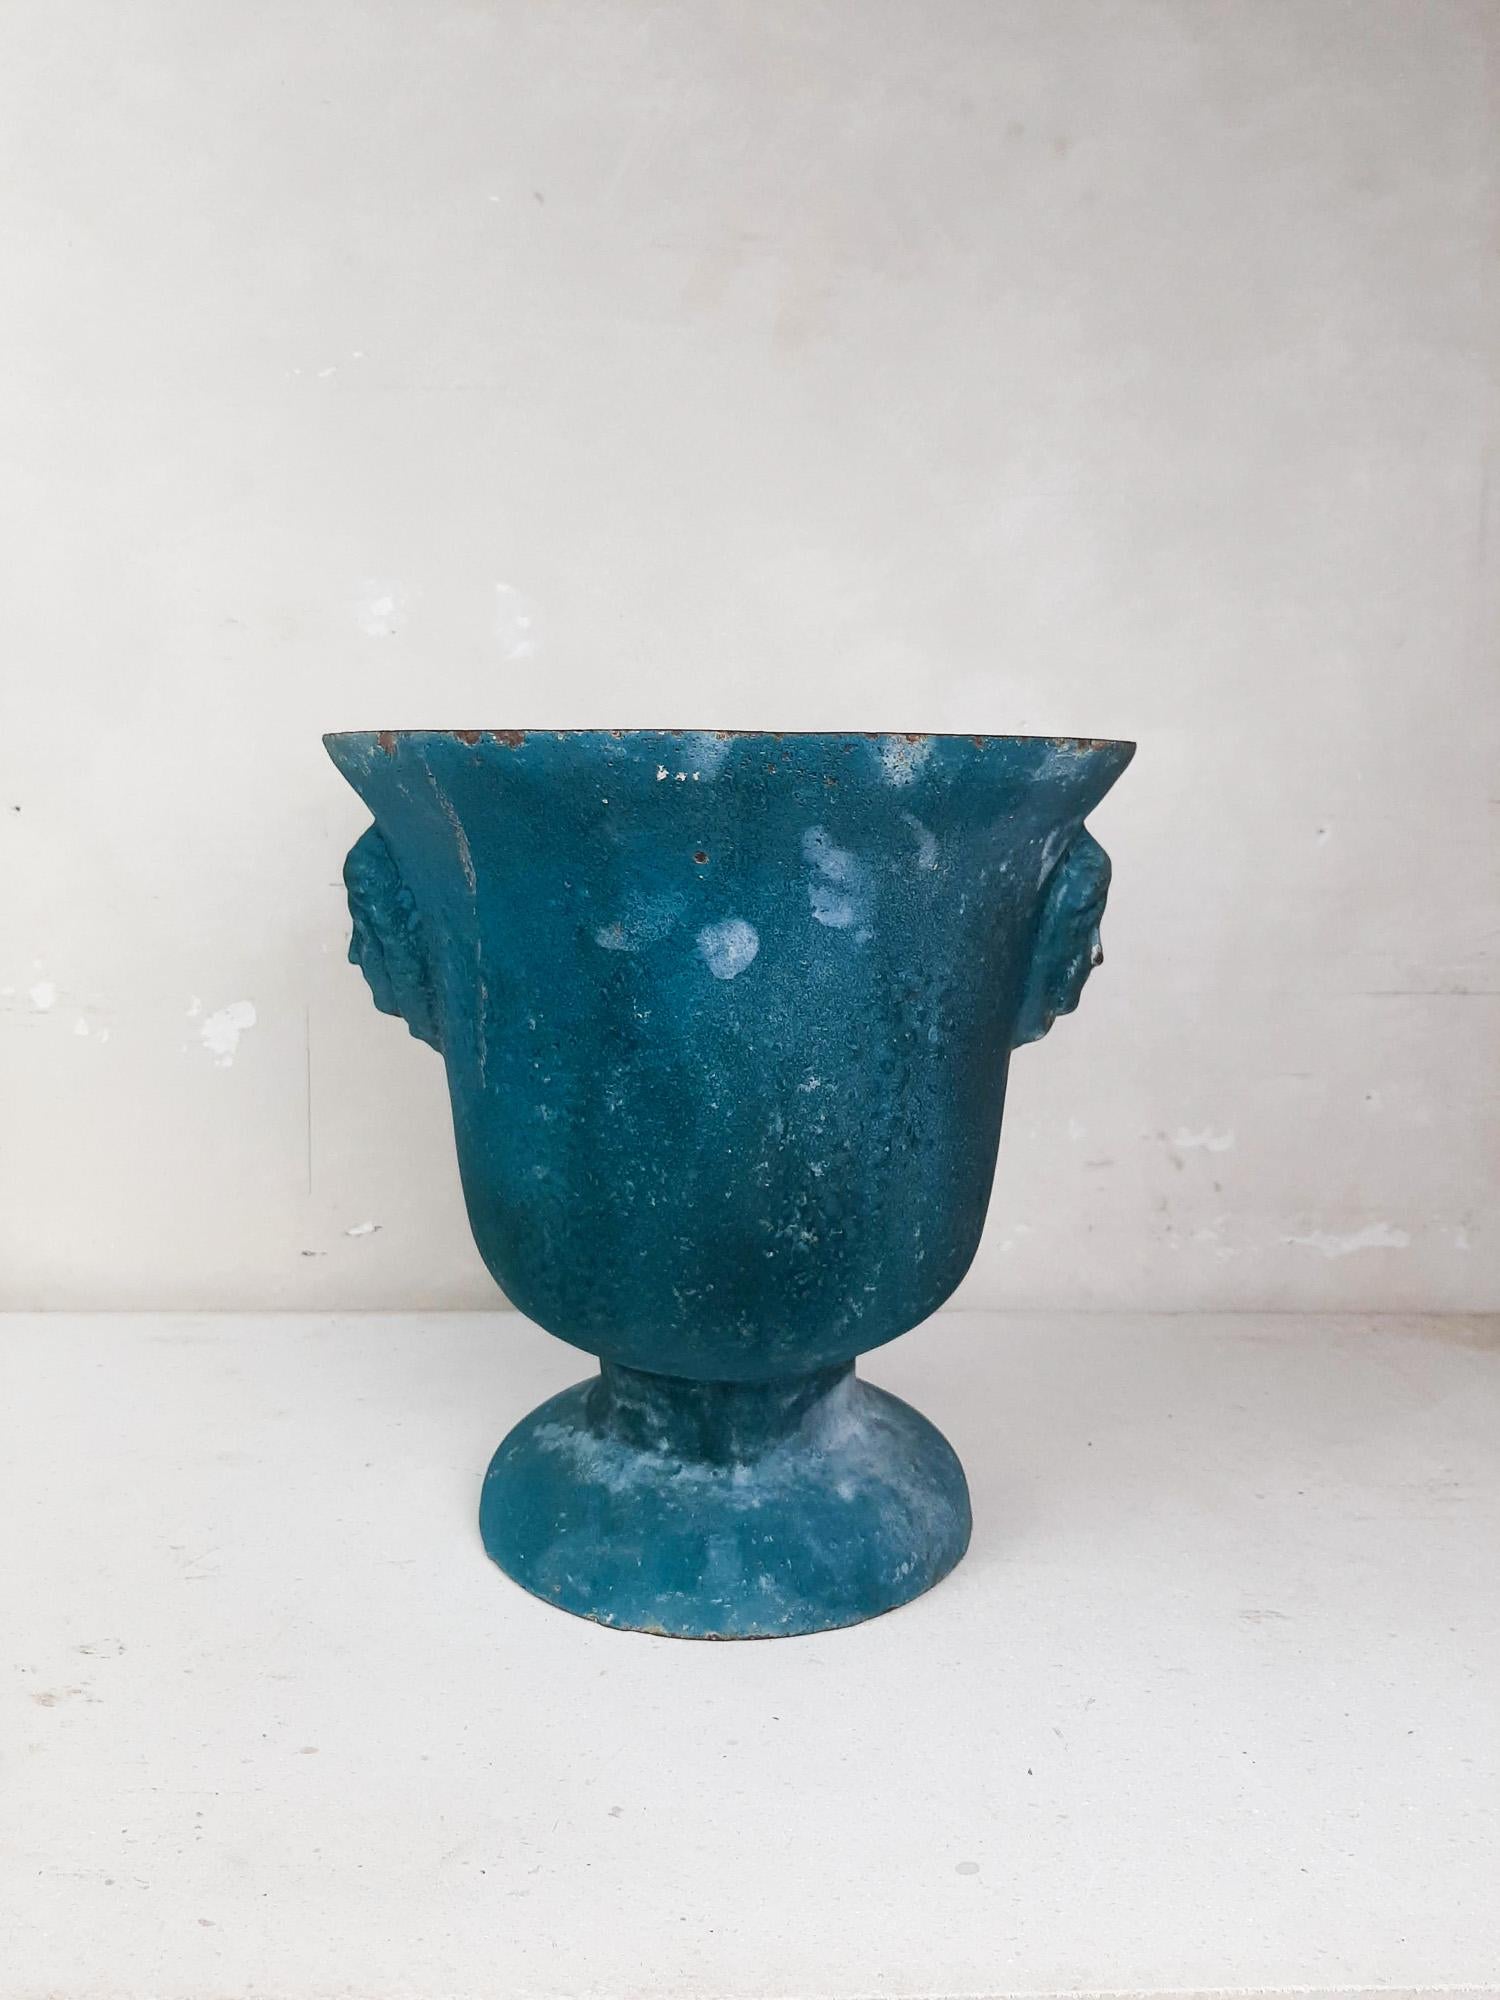 Antique, beautiful turquoise blue enamelled cast iron Paris en Cie vase

Measures: High 32 cm
Diameter 31 cm.